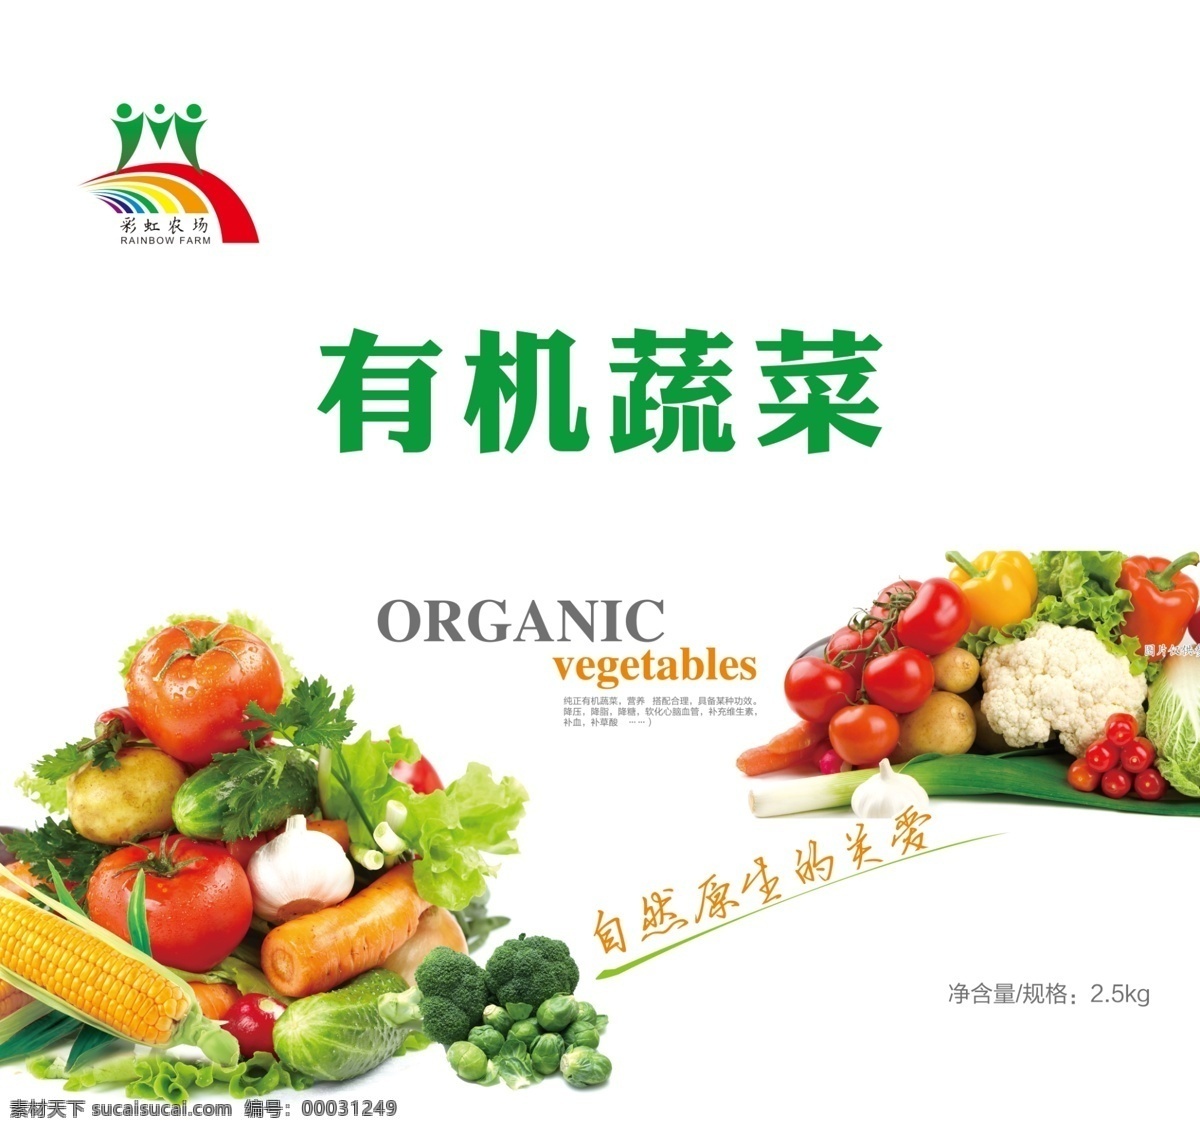 蔬菜包装 有机蔬菜 蔬菜礼盒 生鲜礼盒 菜箱 果蔬 包装设计